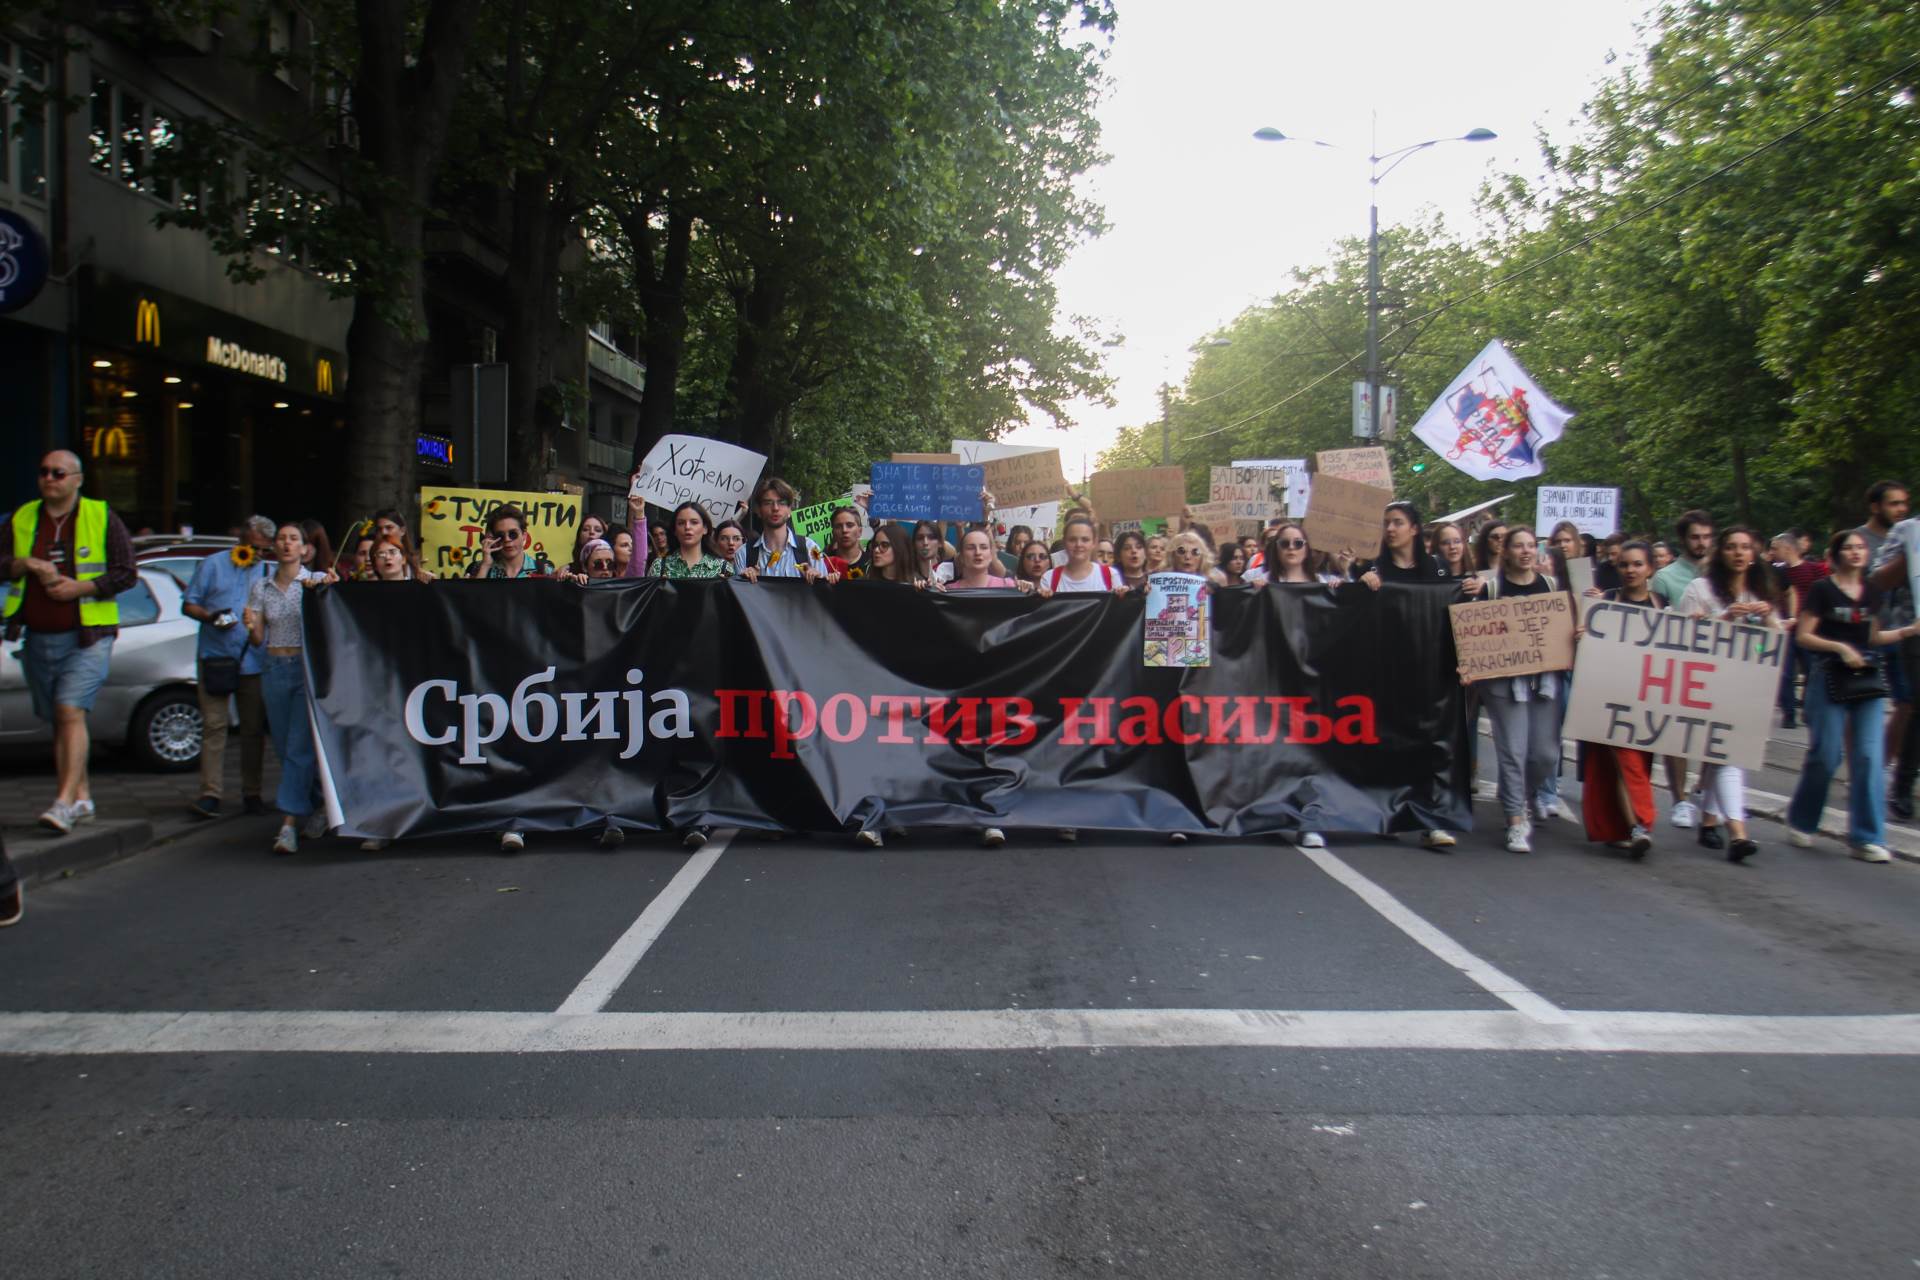  Peti opozicioni protest u Srbiji 